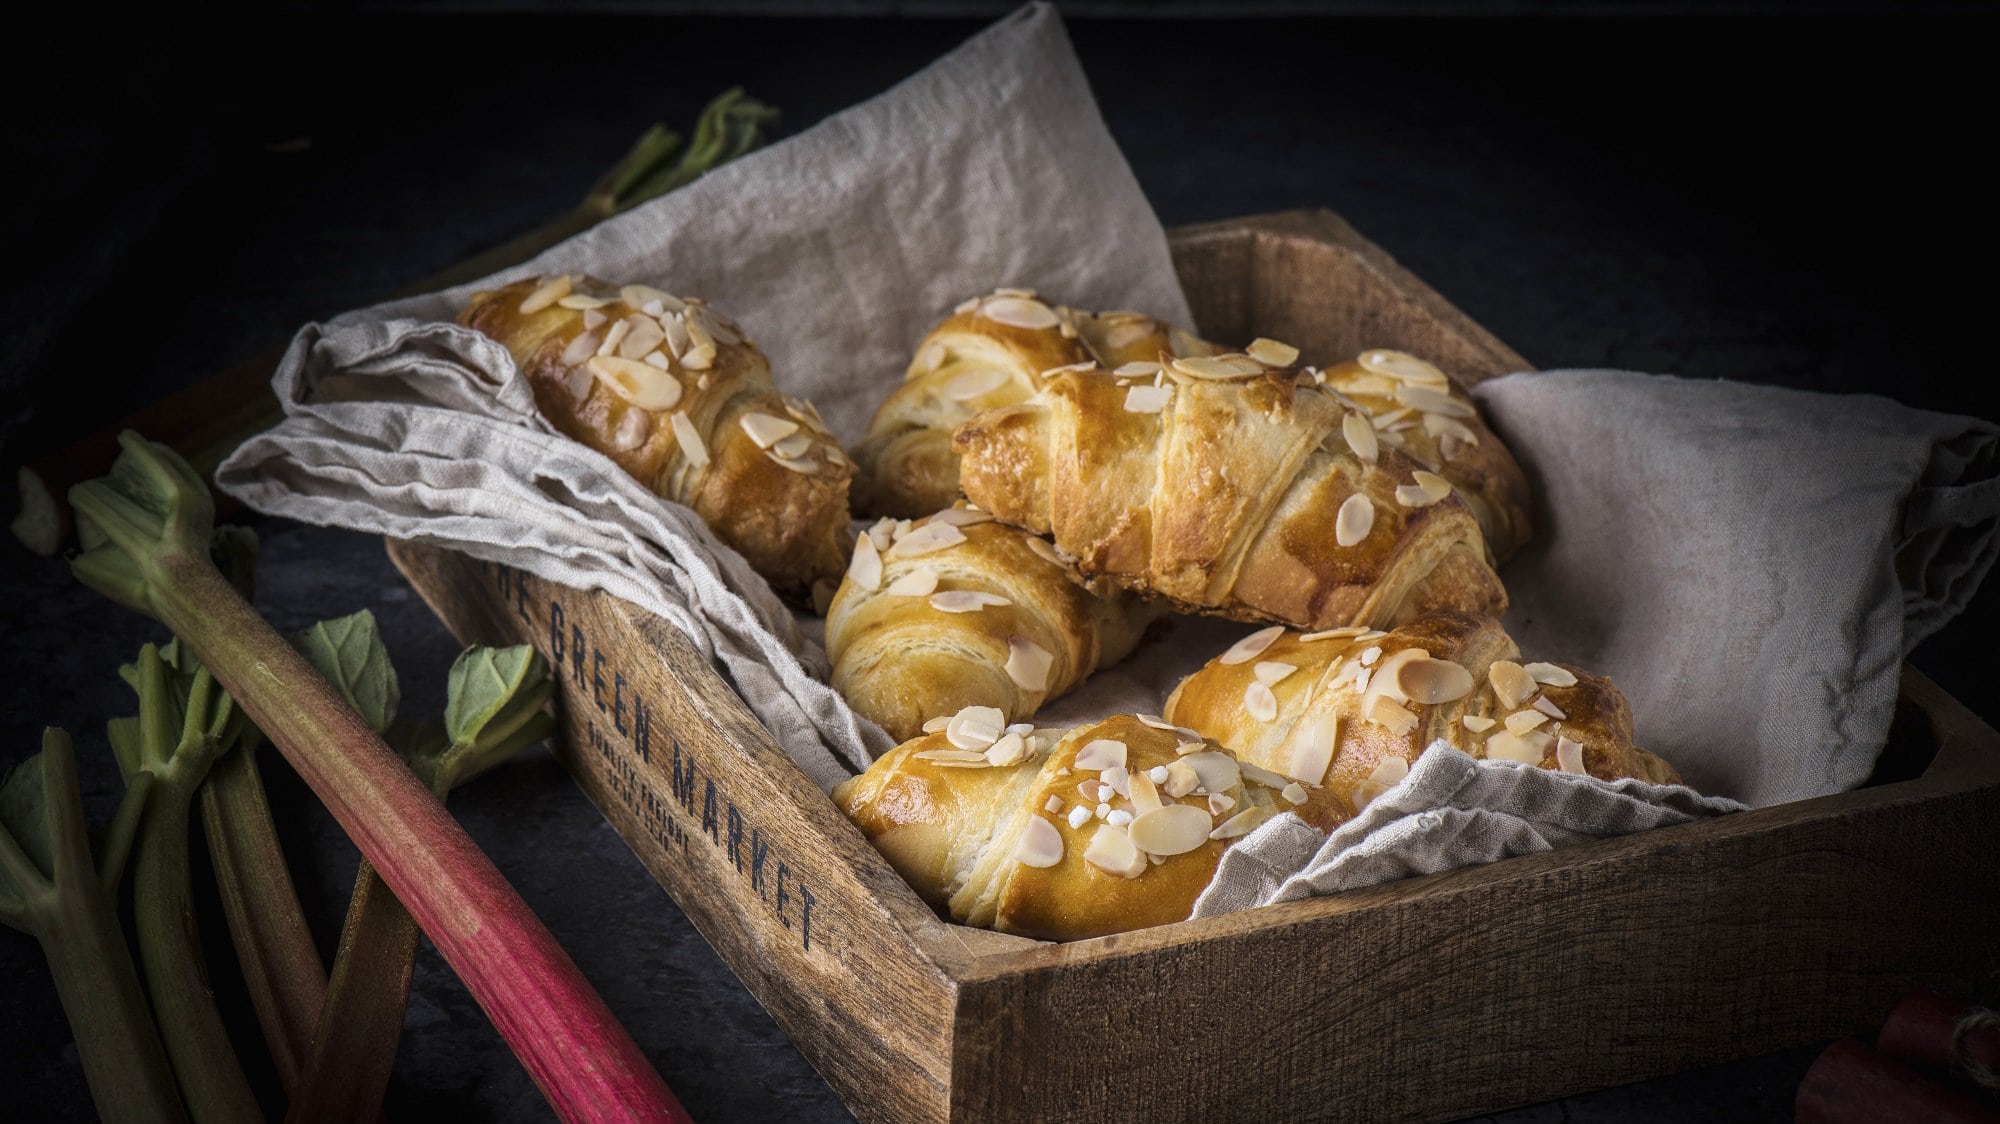 In einem Brotkorb liegen mehrere Rhabarber-Croissants. Sie sind mit Mandelblättchen bestreut und sind goldbraun gebacken.